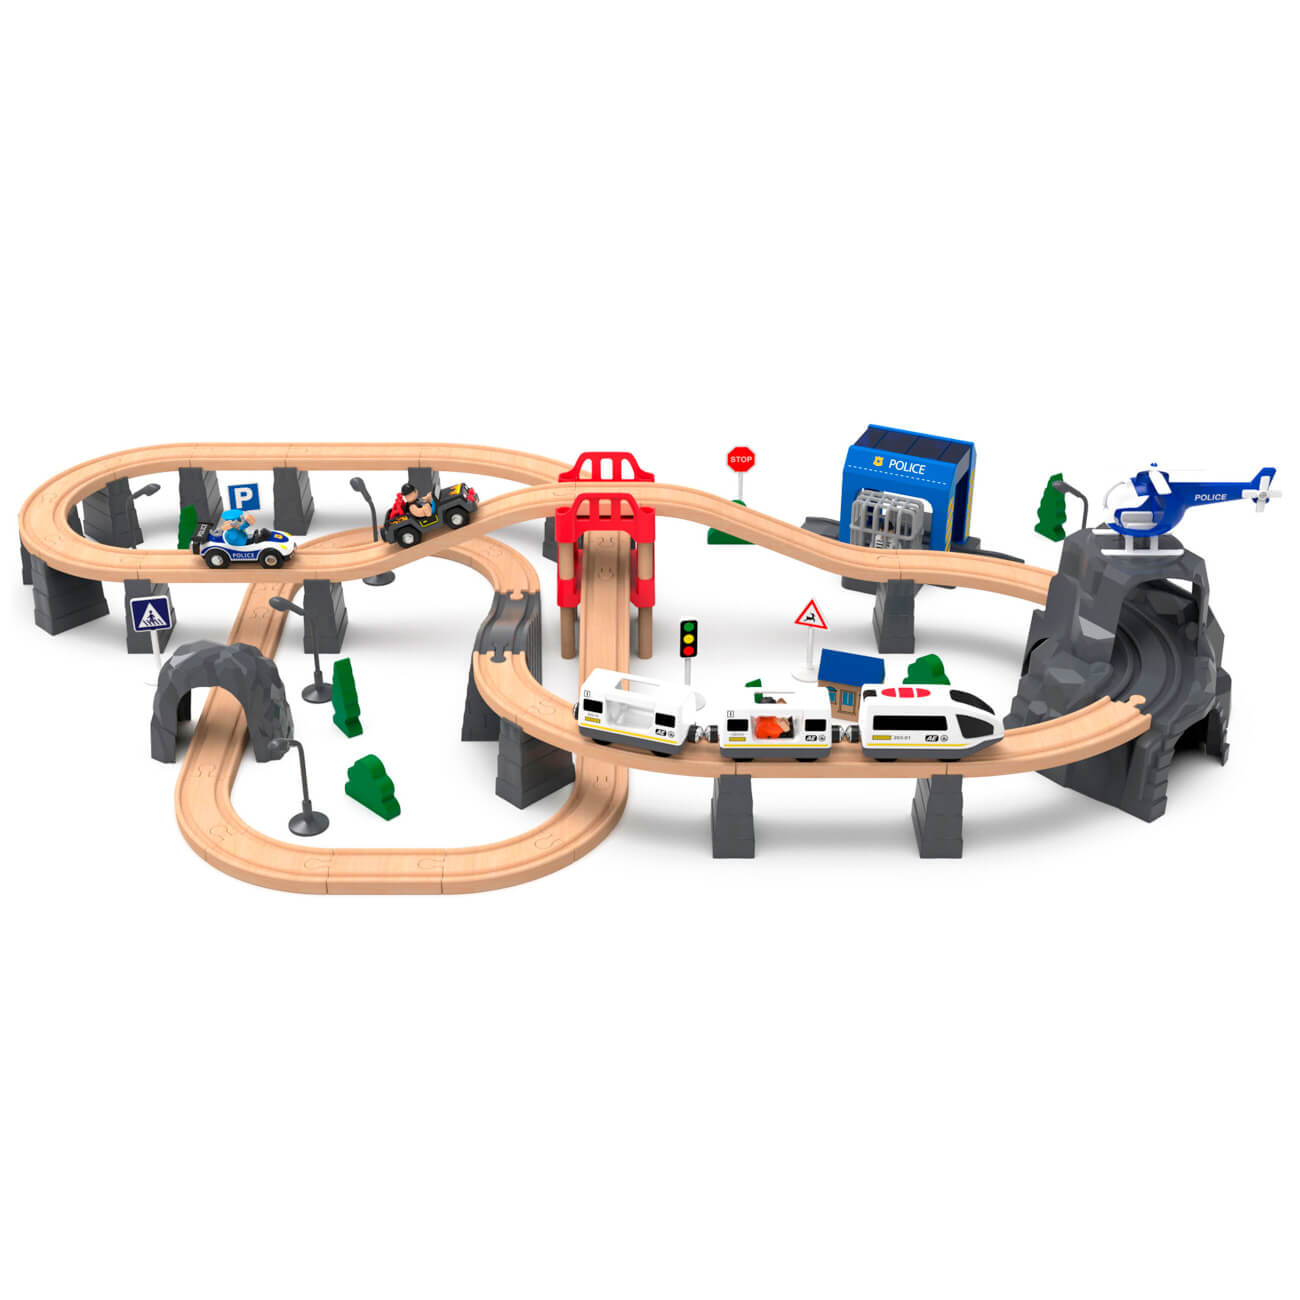 Железная дорога игрушечная, 98 см, дерево/пластик, Электропоезд, Game rail железная дорога новогодний поезд свет и музыка